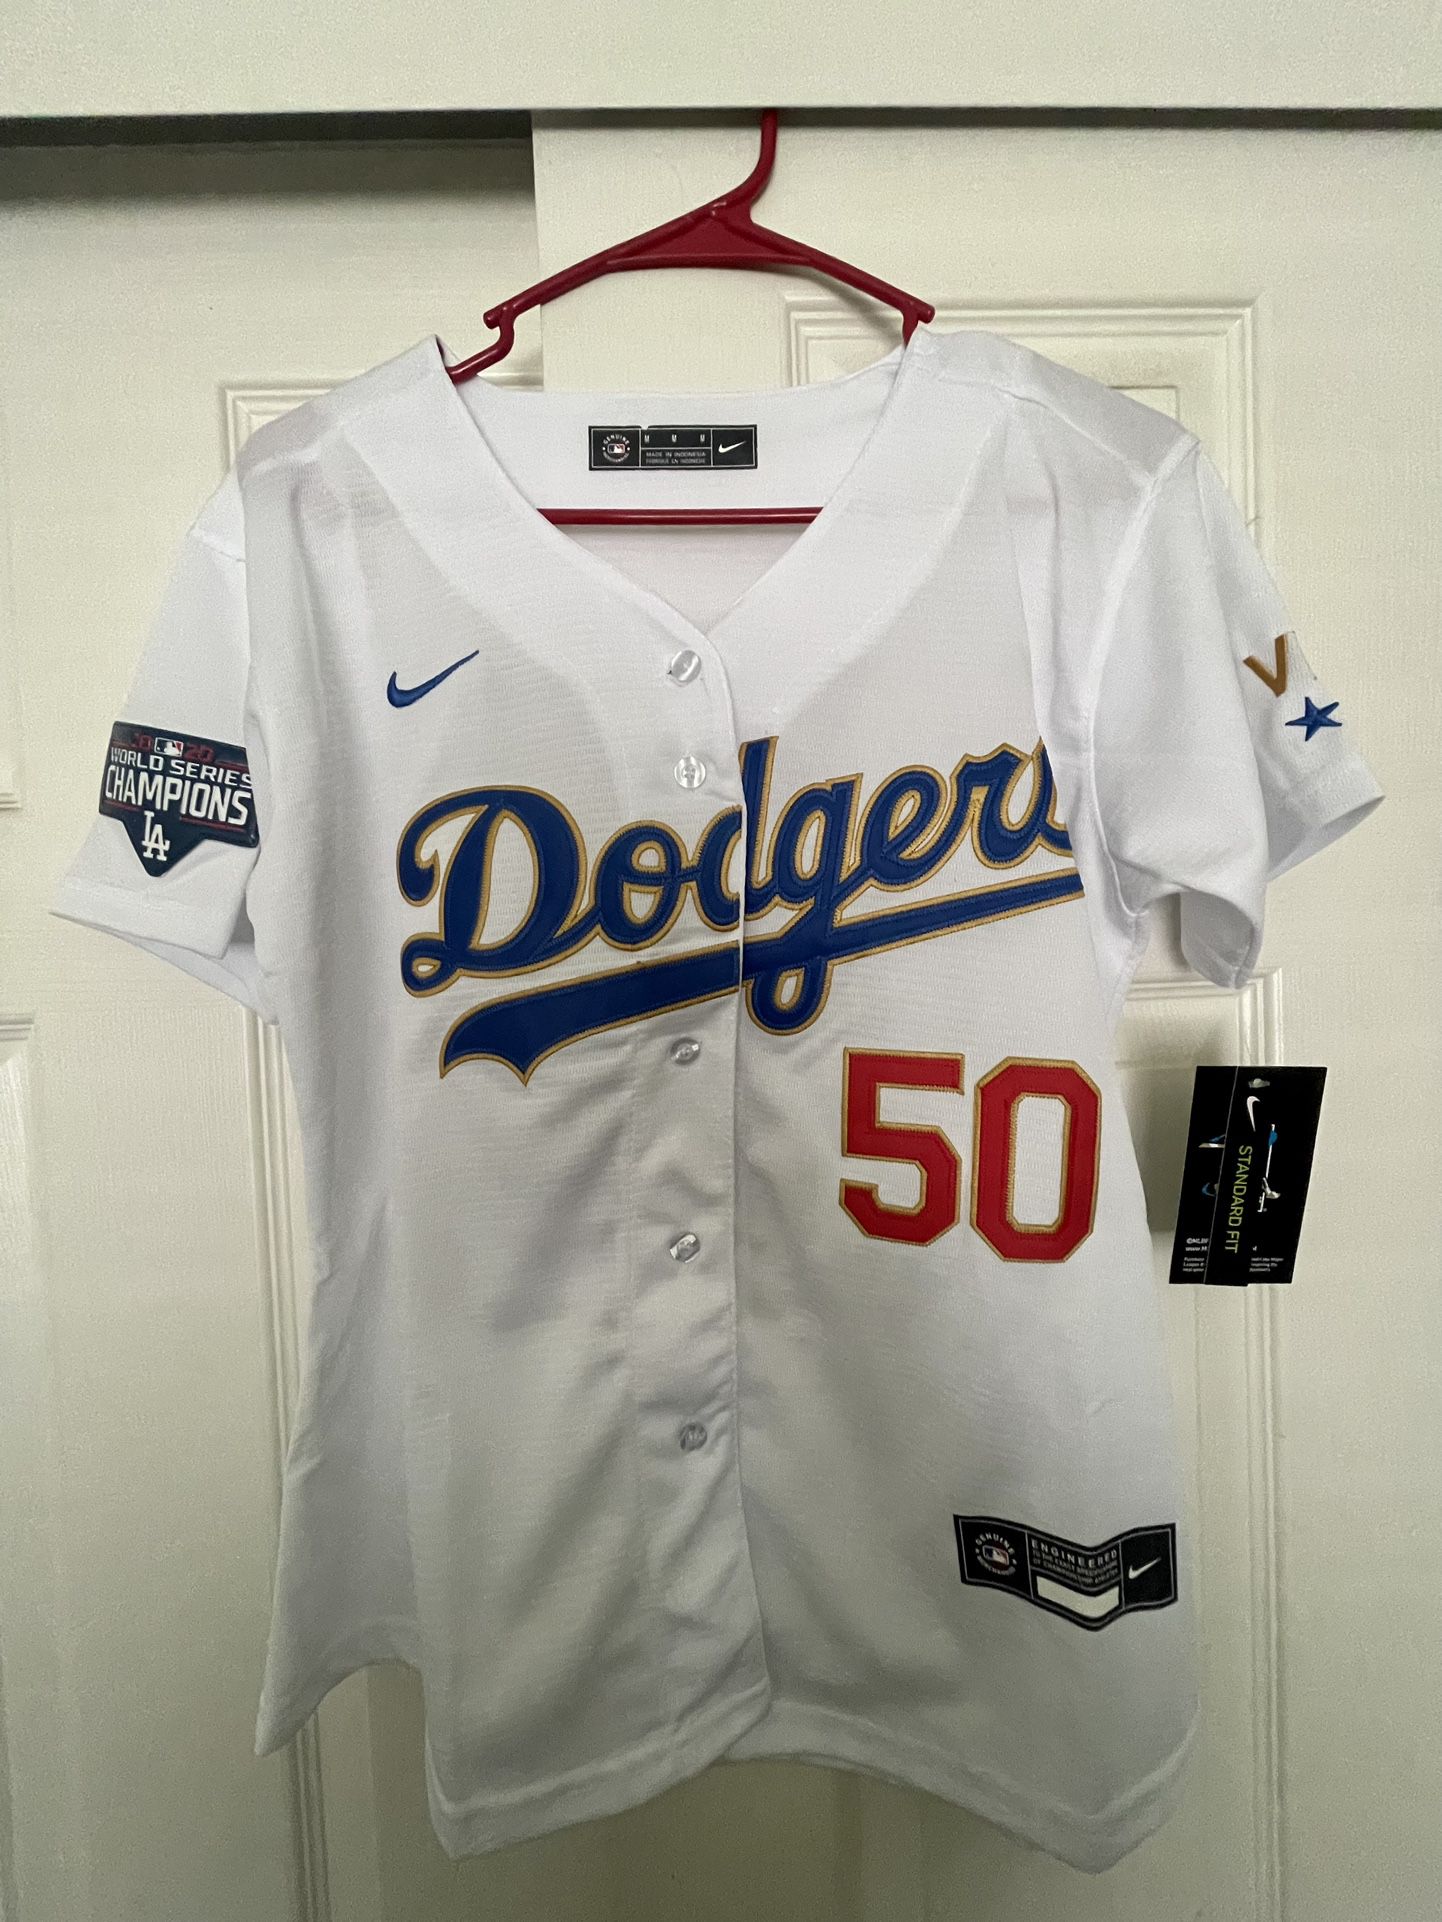 Los Angeles Dodgers Kookier Betts Women Jersey (MEDIUM) for Sale in Chino,  CA - OfferUp